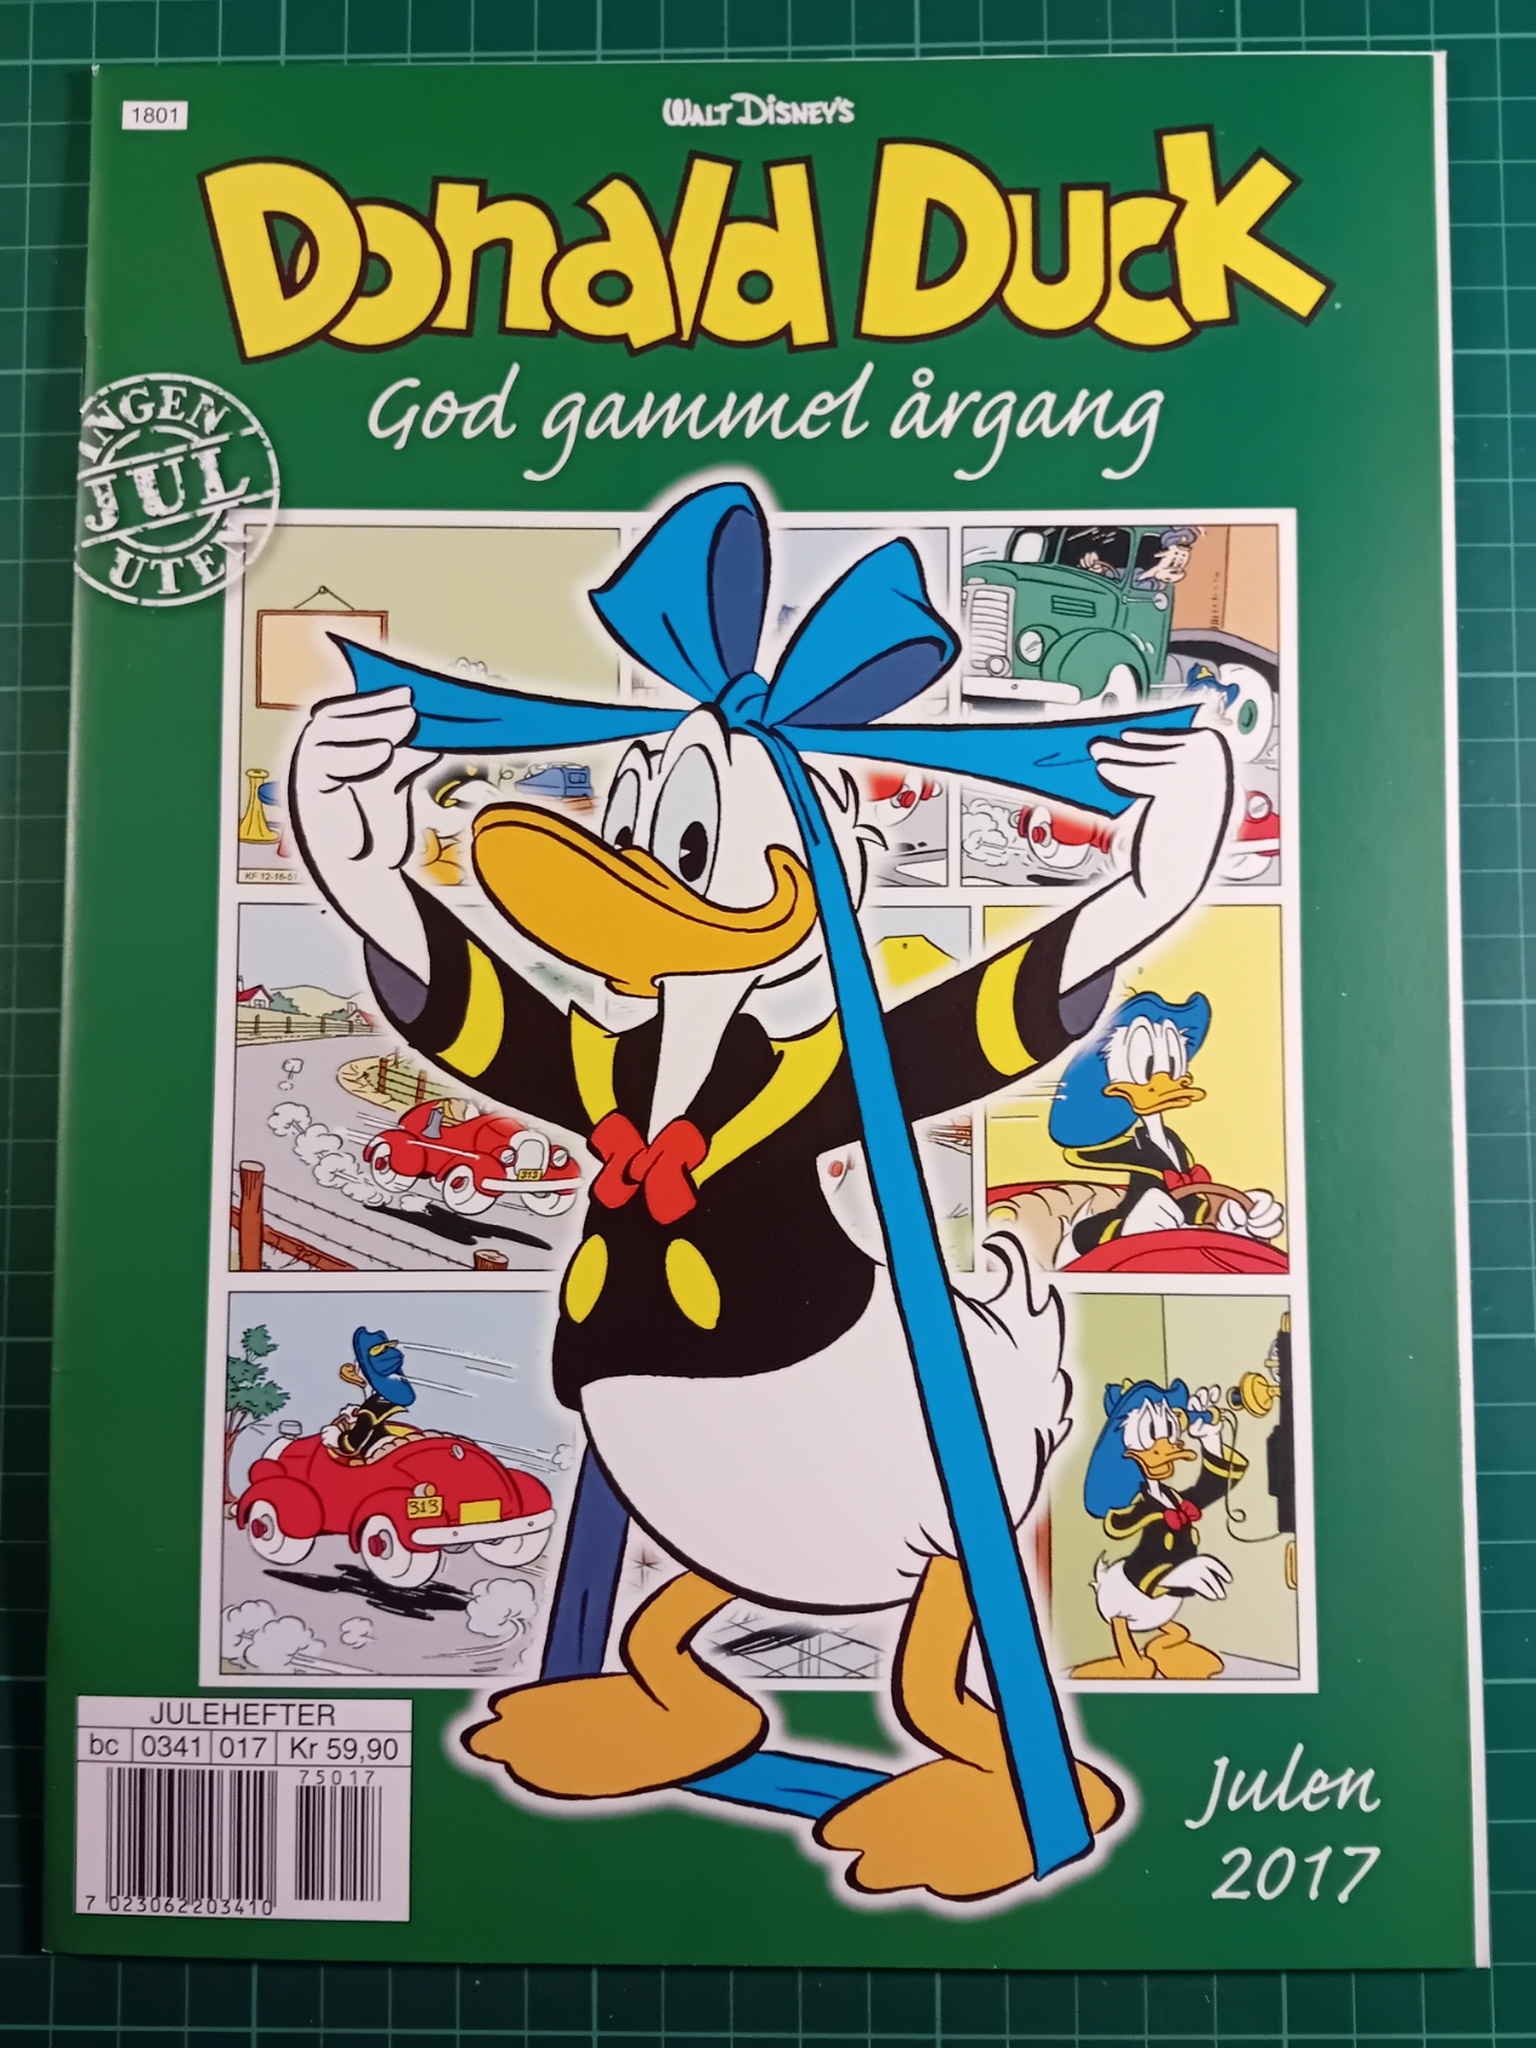 Donald Duck God gammel årgang 2017